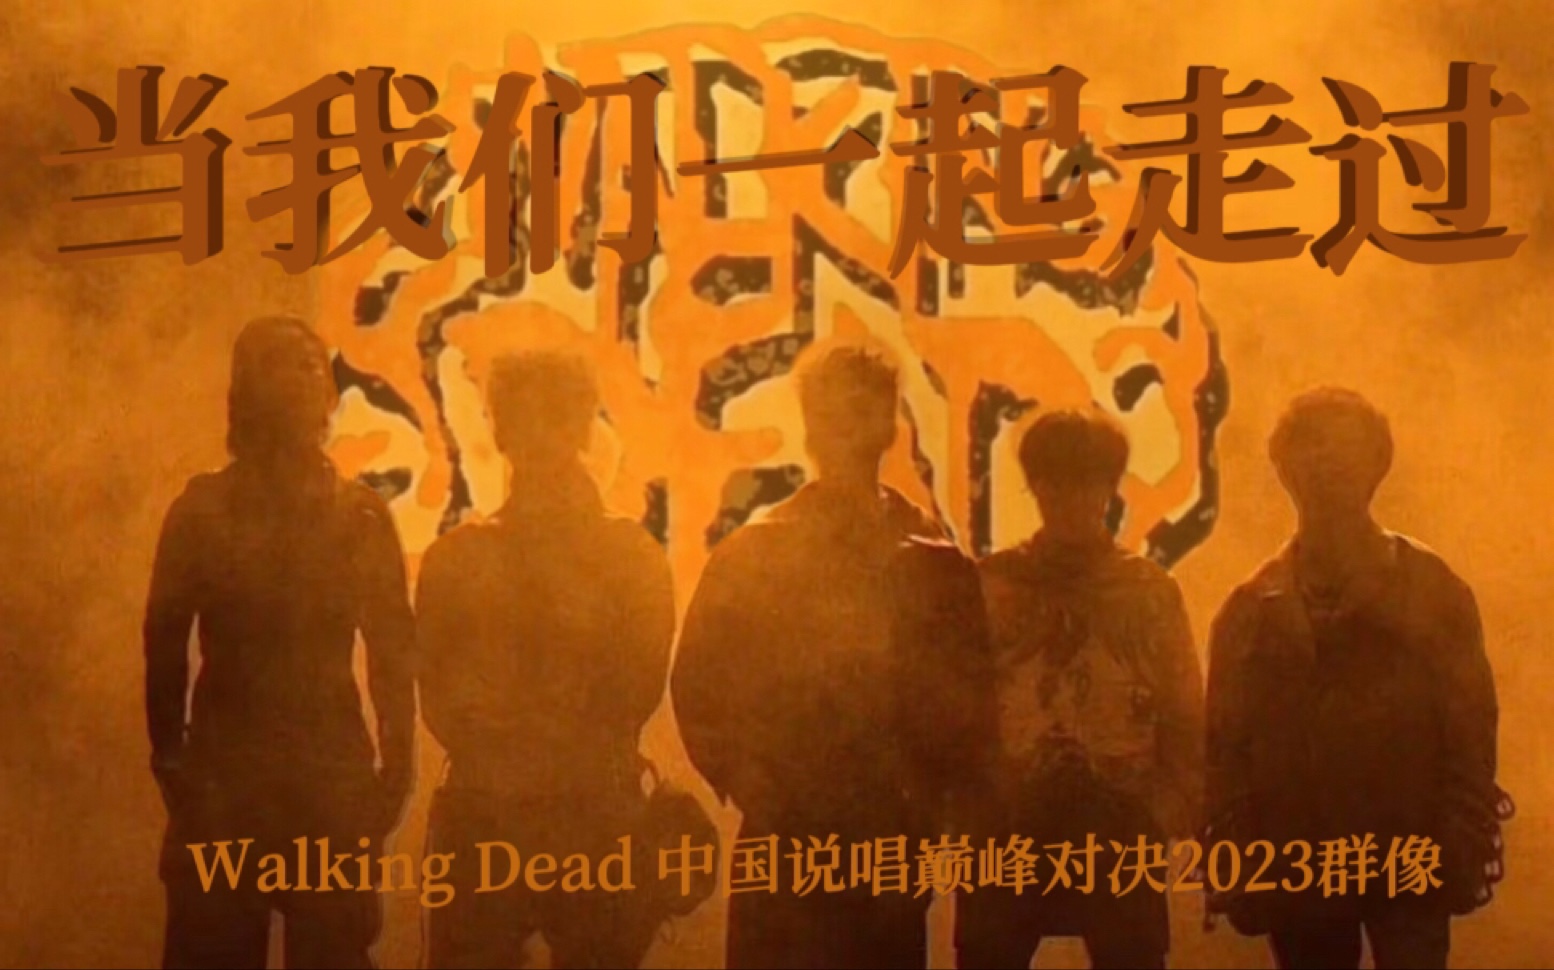 【Walking Dead 中国说唱巅峰对决2023群像】“当我们一起走过这些伤痛的时候，包着碎裂的心继续下一个梦，也知道我们并不会退缩”｜当我们一起走过